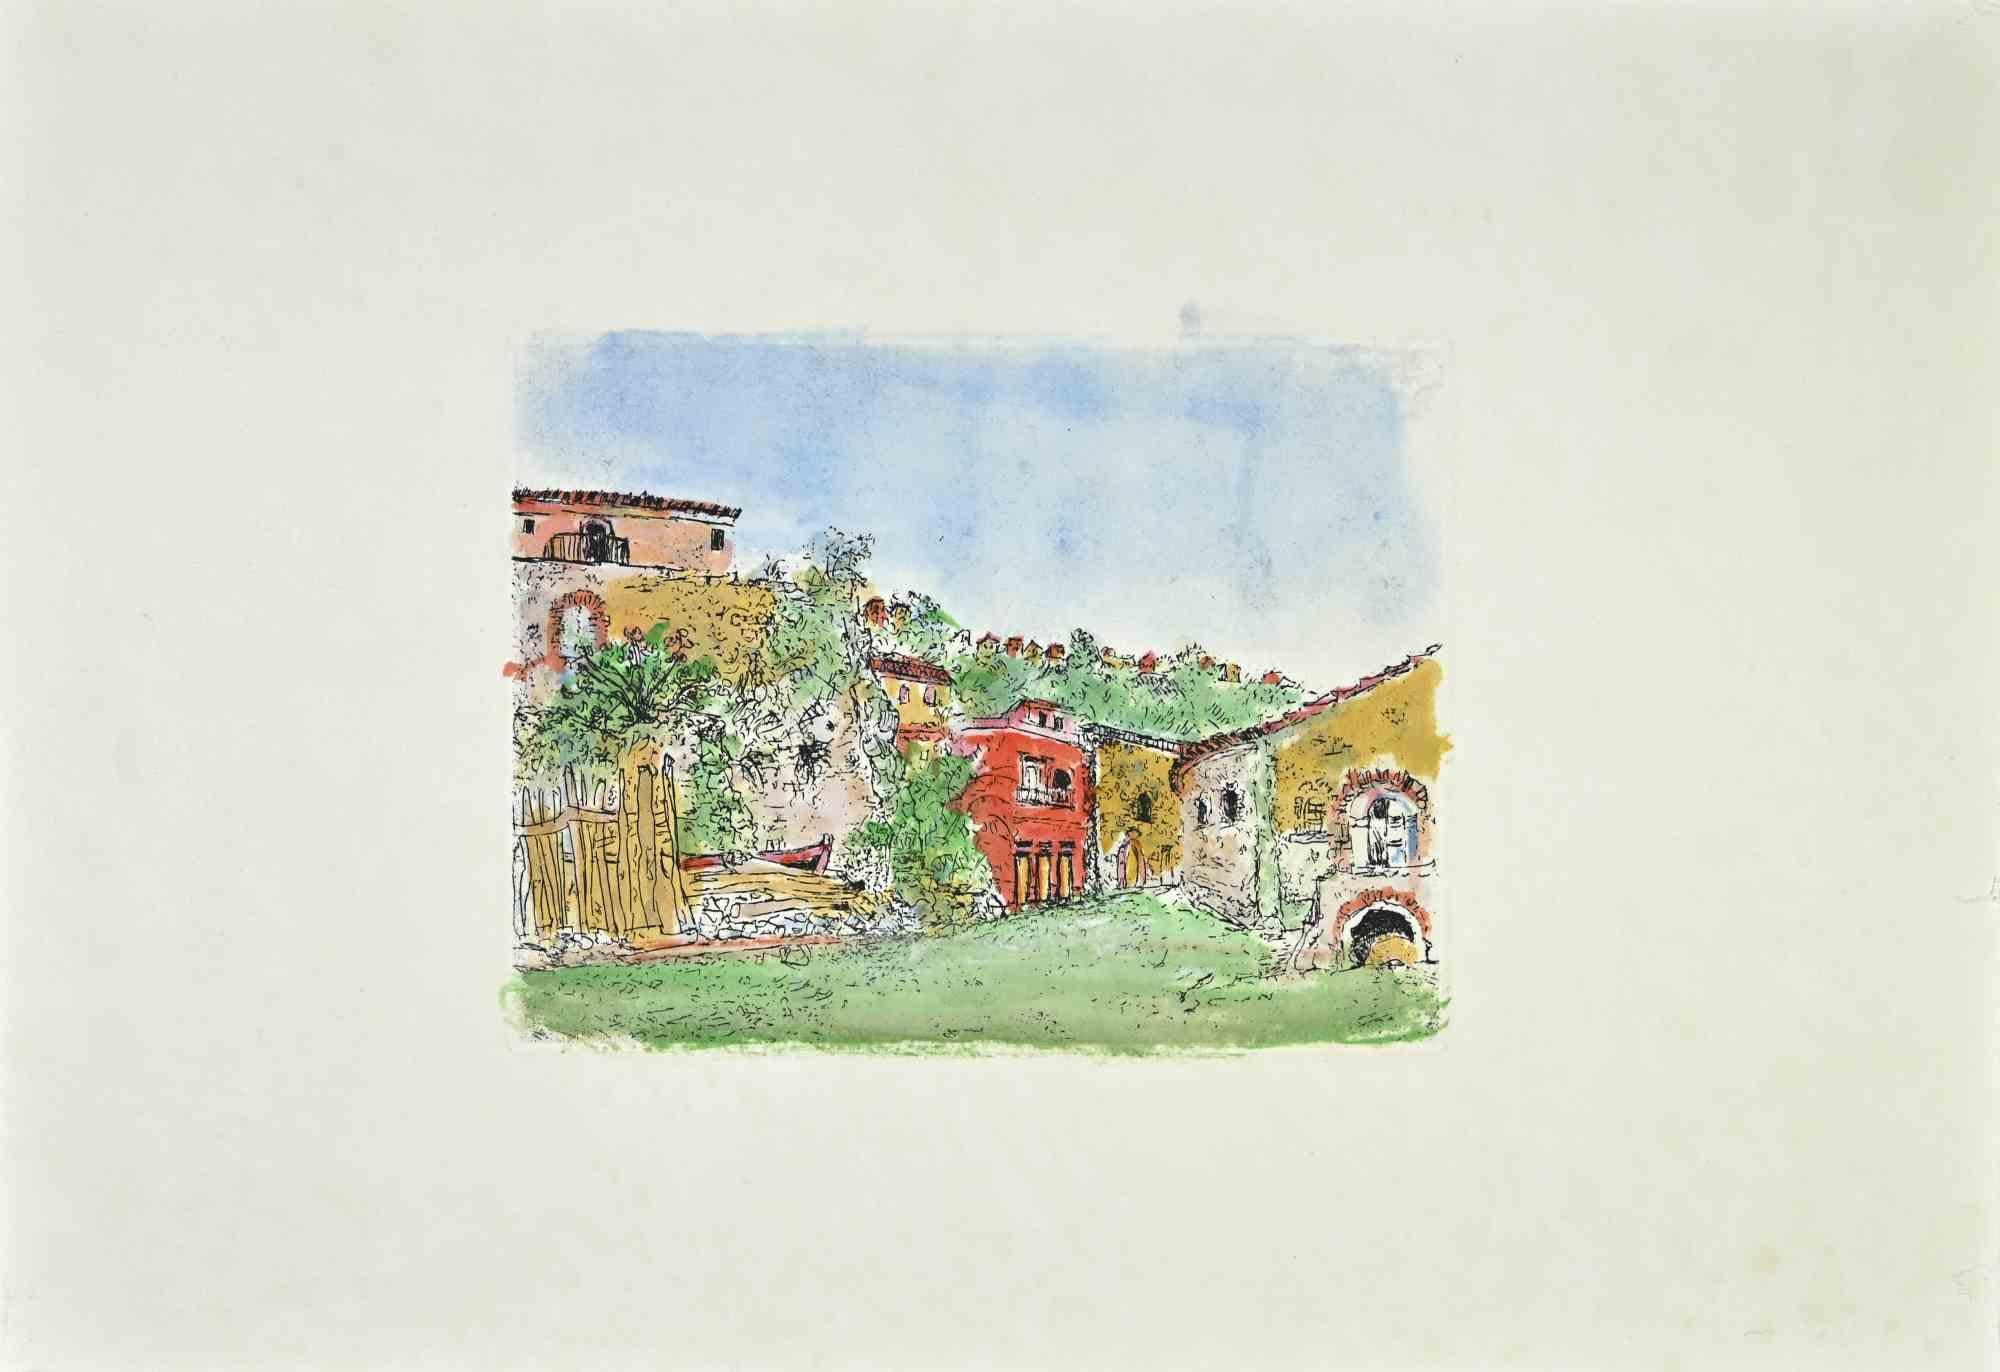 Der Garten der Scilla ist ein Kunstwerk von Giovanni Omiccioli (25. Februar 1901 - 1. März 1975).

Farbige Radierung auf Karton.

Der Künstler möchte eine ausgewogene Komposition durch Präzision und kongruente Farben definieren.

Gute